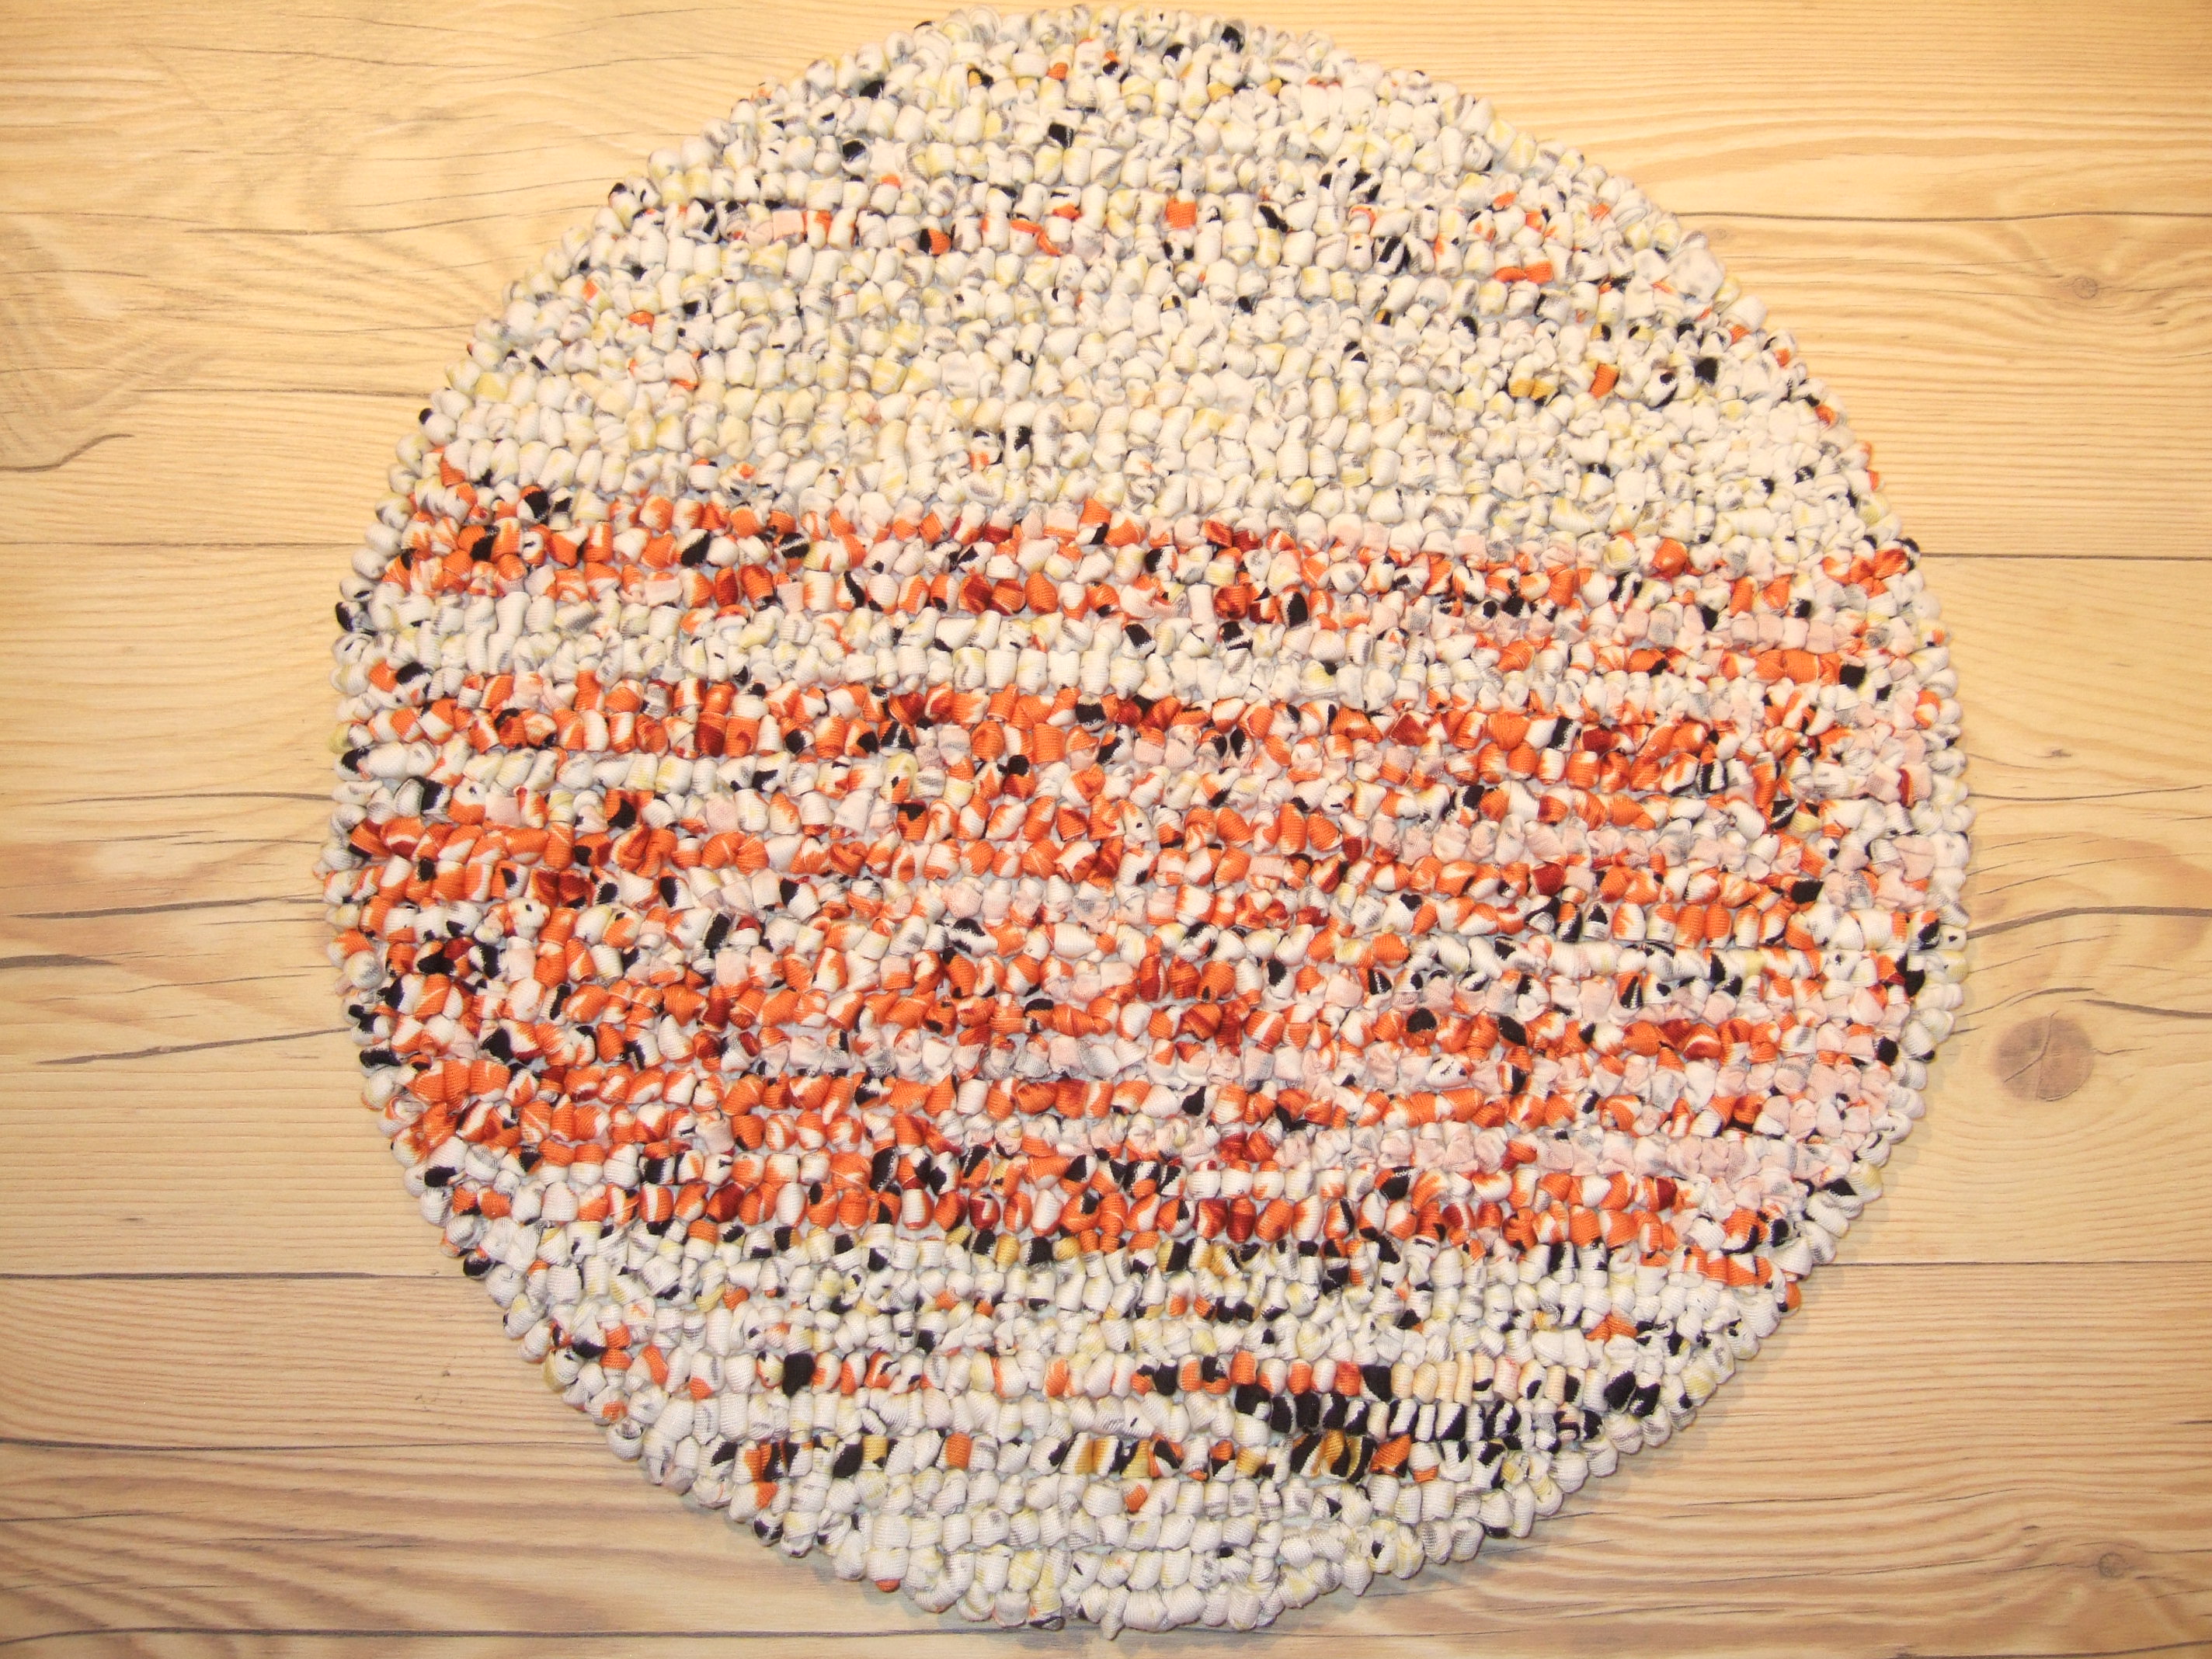 ズパゲッティチェアパッド 円型35cm 白 オレンジ 黒1 ズパゲッティ素材のチェアパッド ラグ マットなら栄光カーペット株式会社